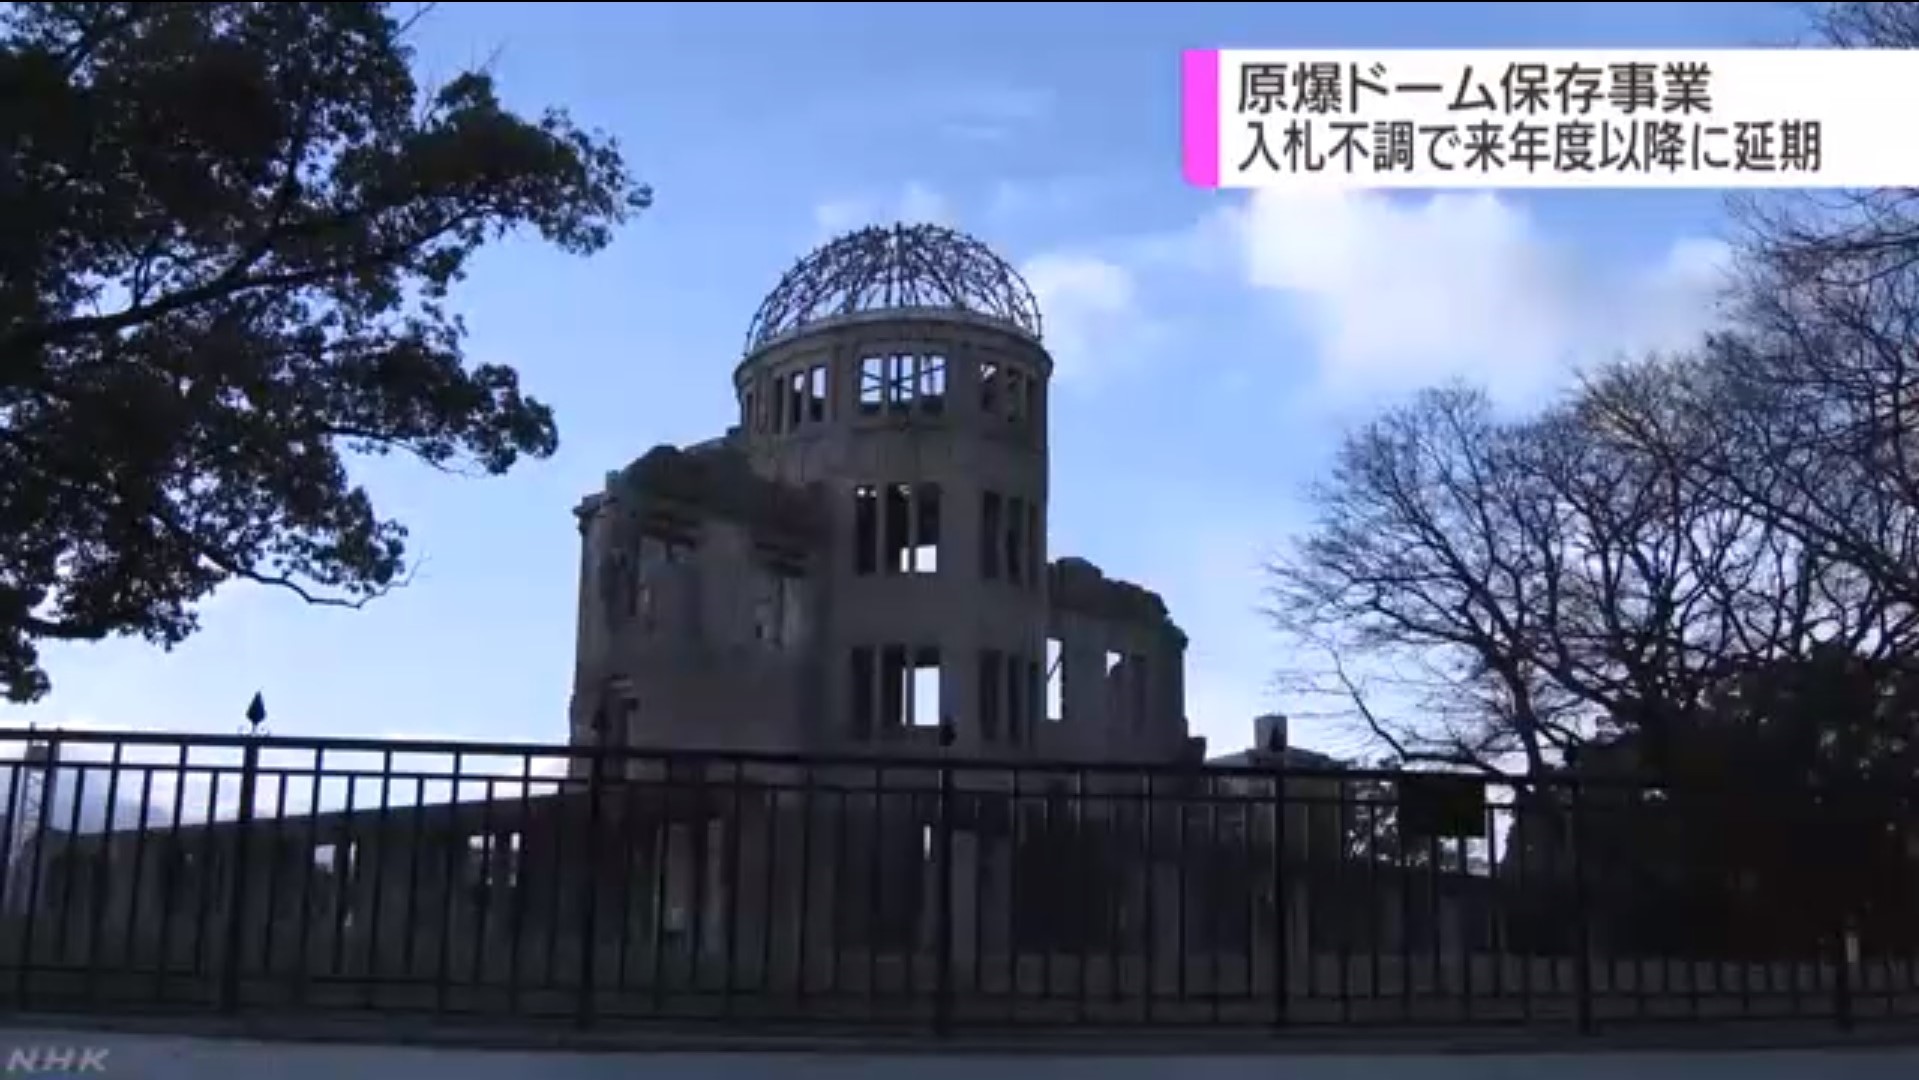 原爆ドームの保存事業 入札不調で来年度以降に延期へ 広島 注目記事 Nhk政治マガジン